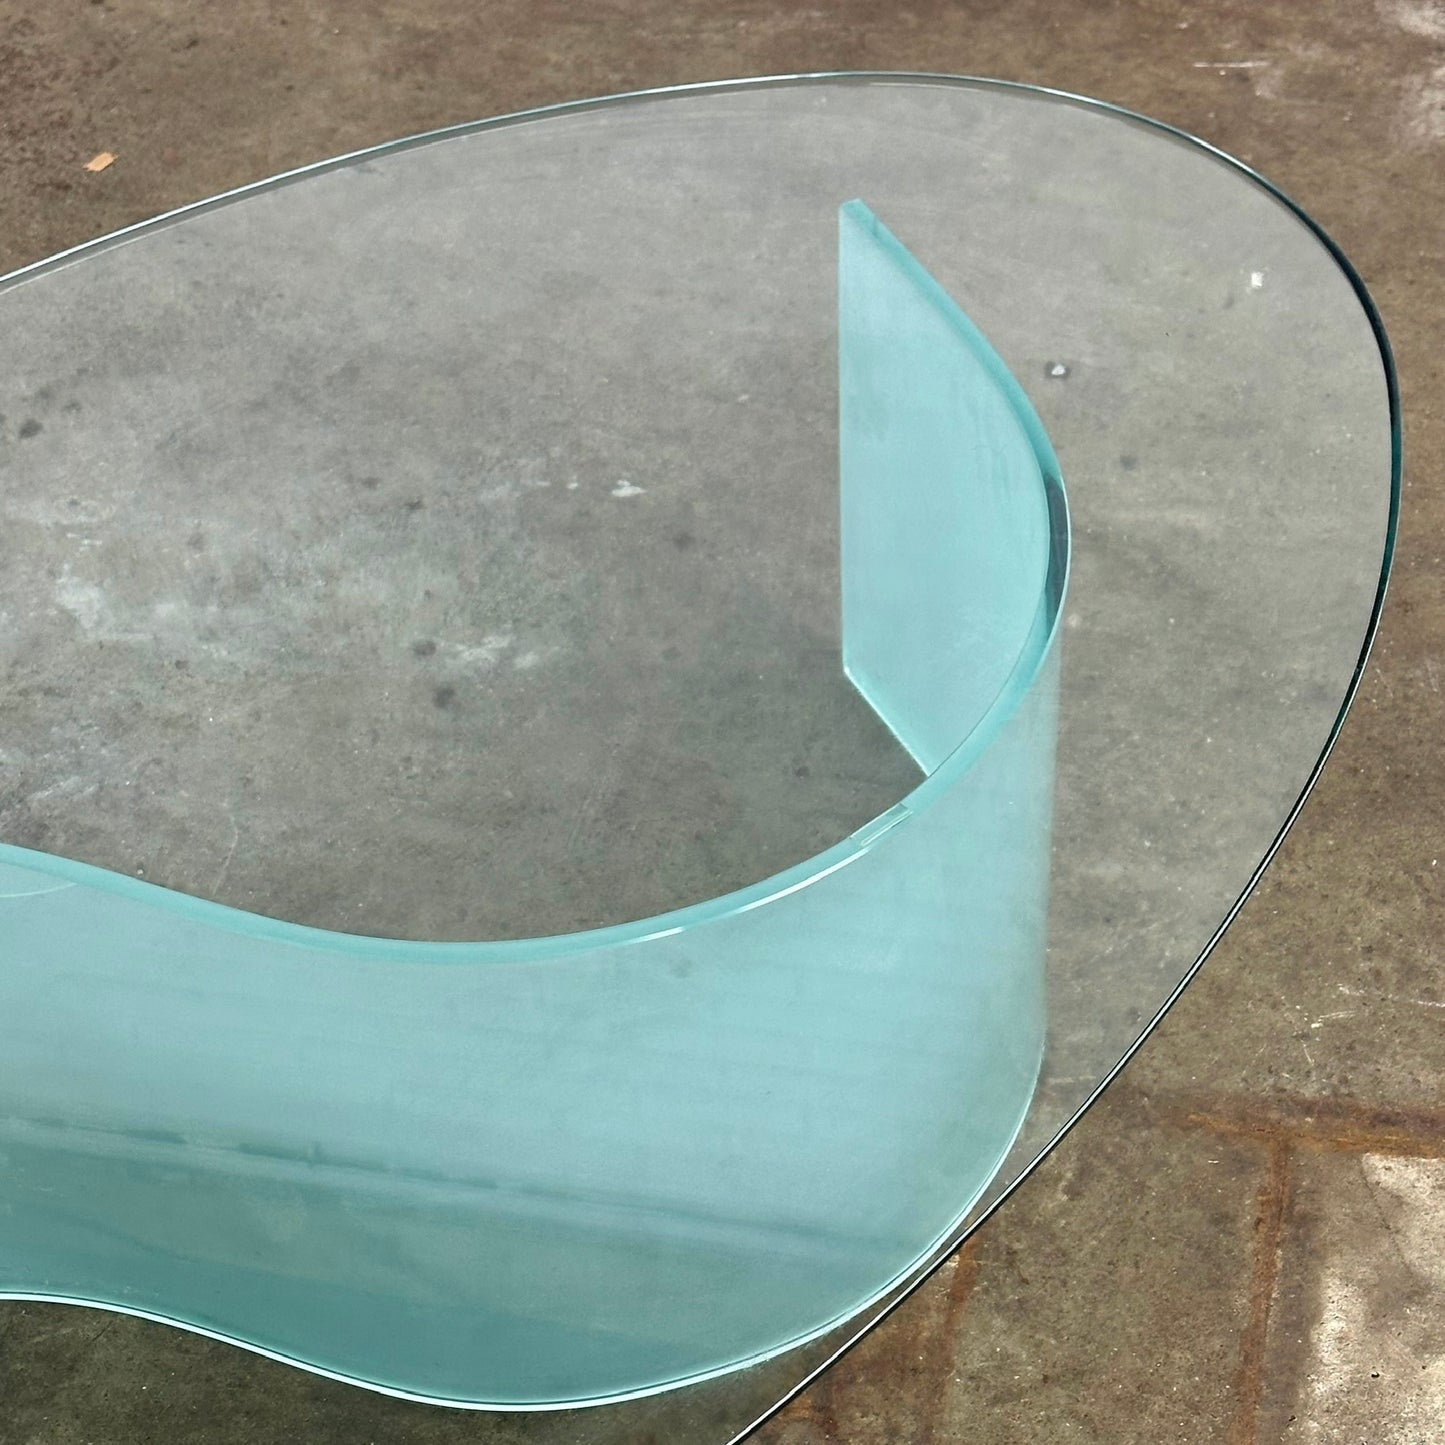 Ovale glazen salontafel met golf / s shape poot